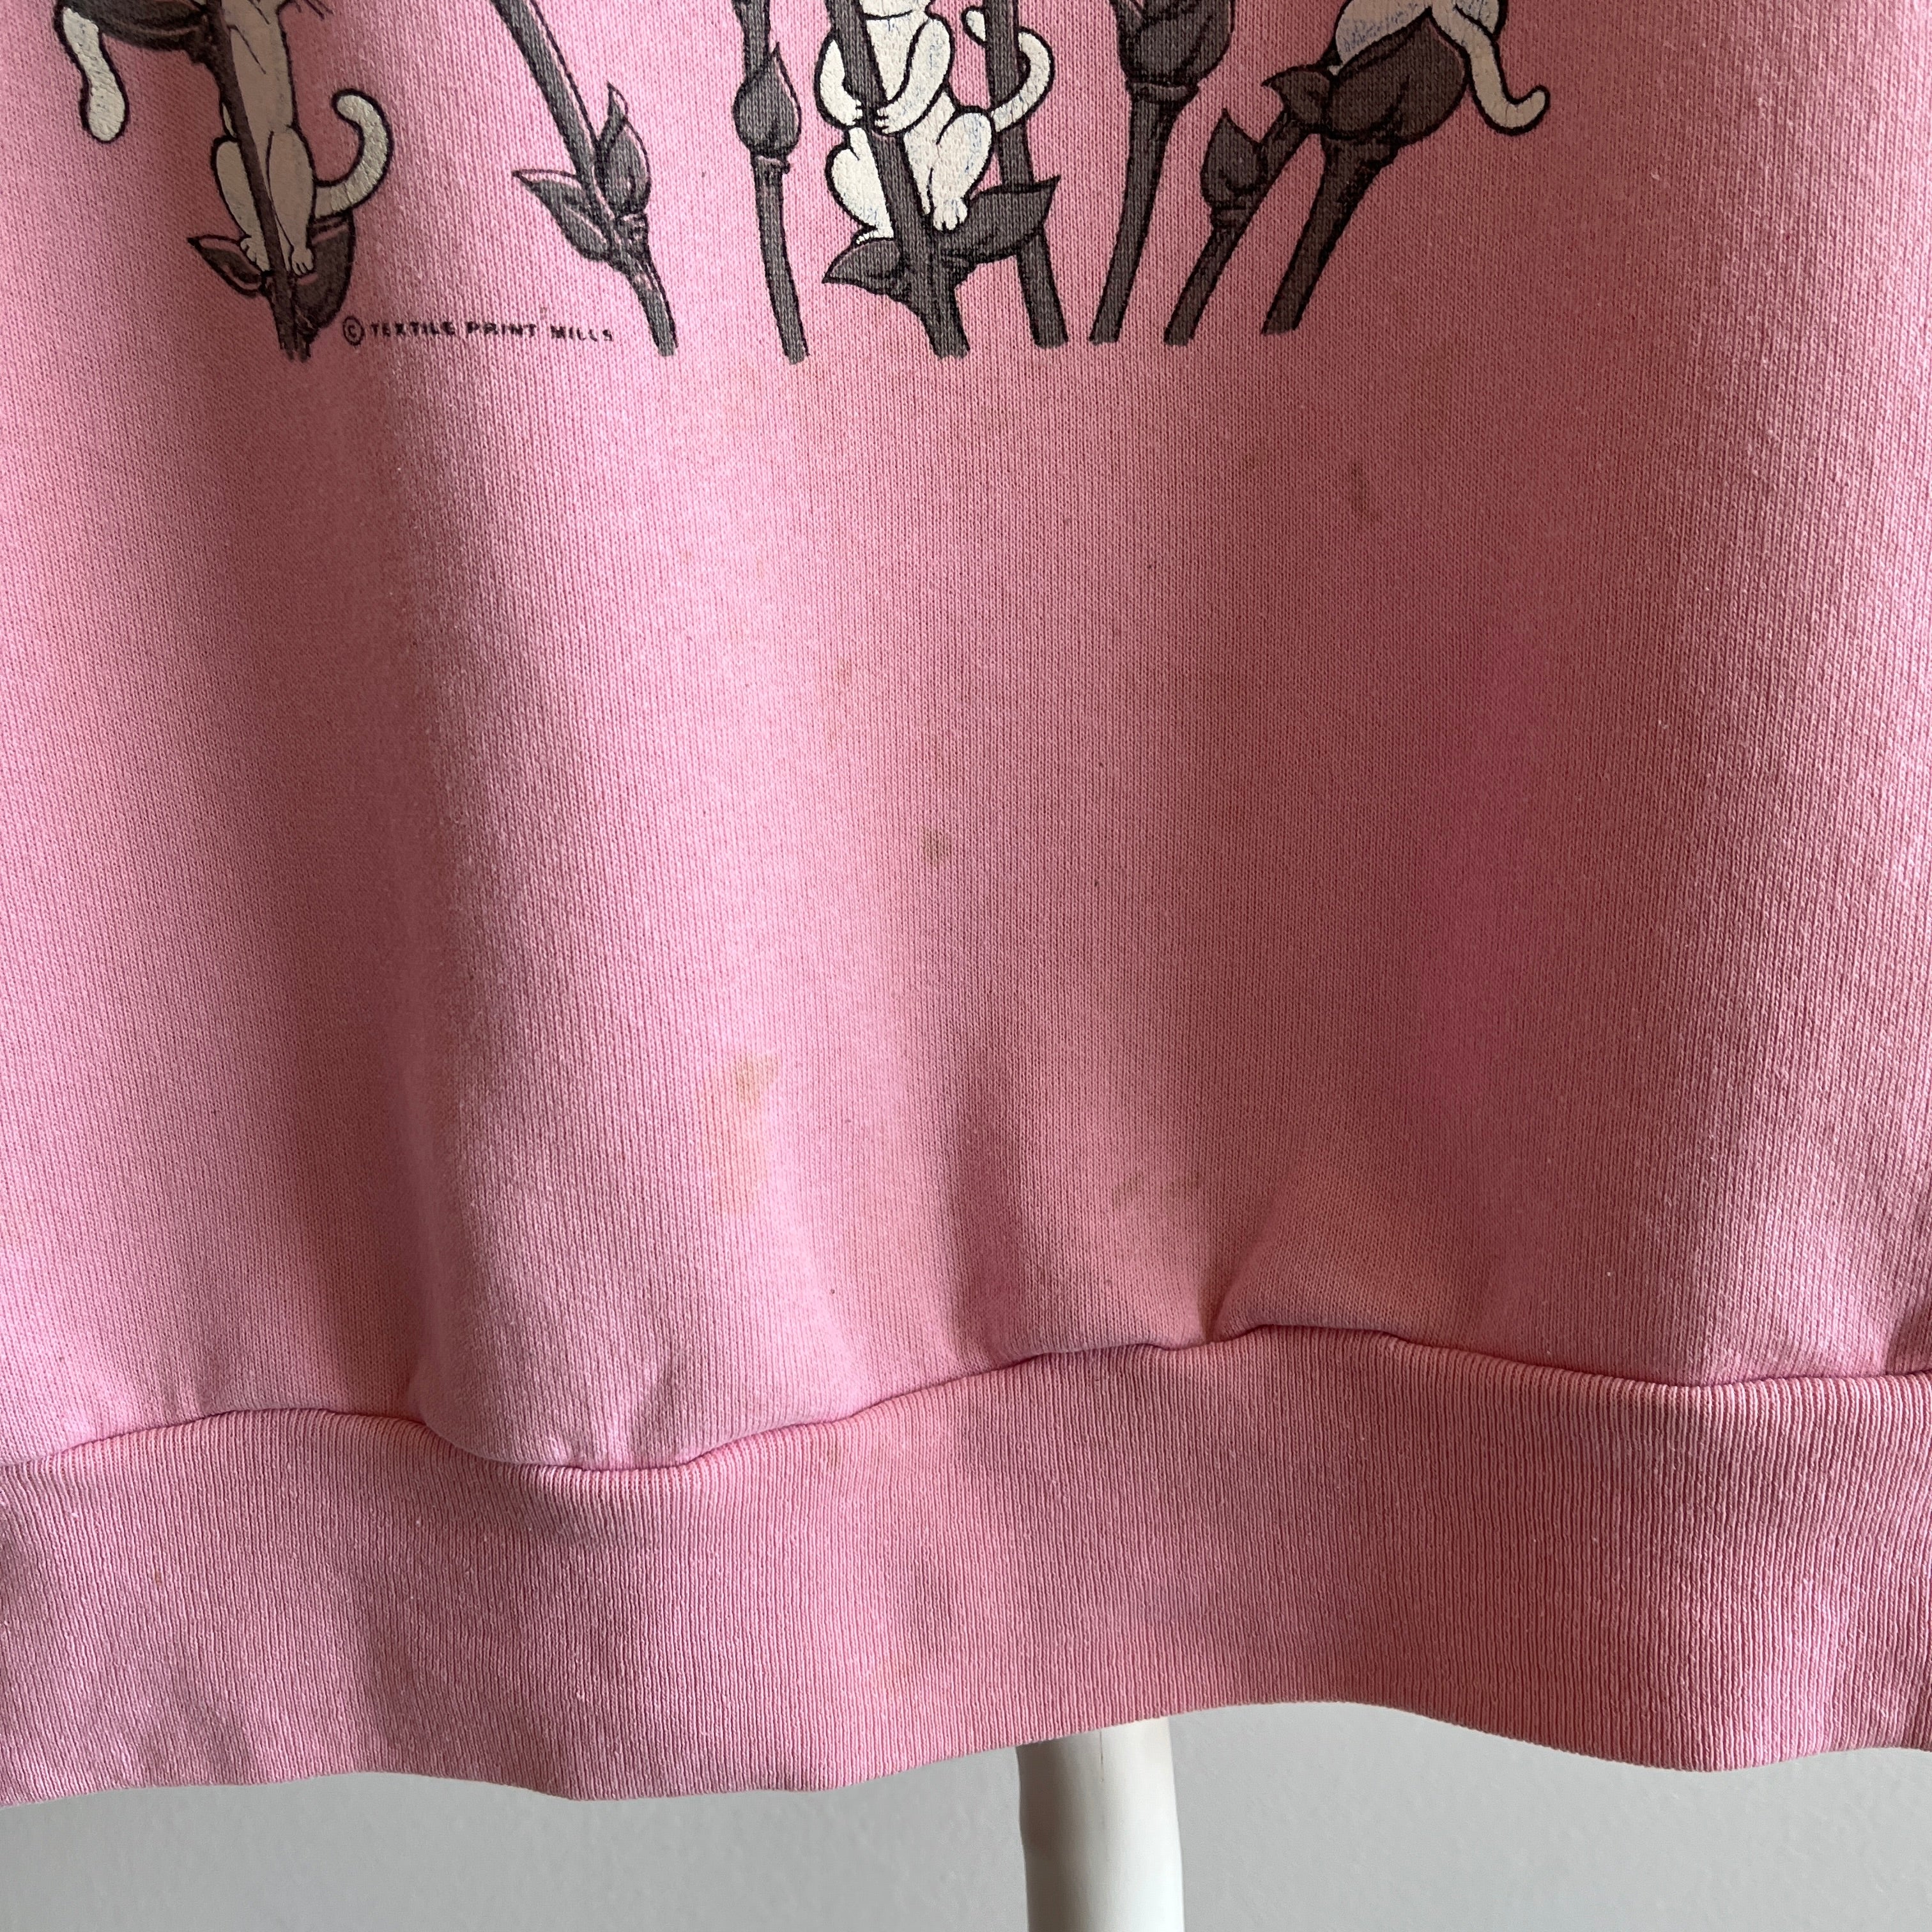 Sweat-shirt Cat Lady/Dude des années 1980 avec des taches